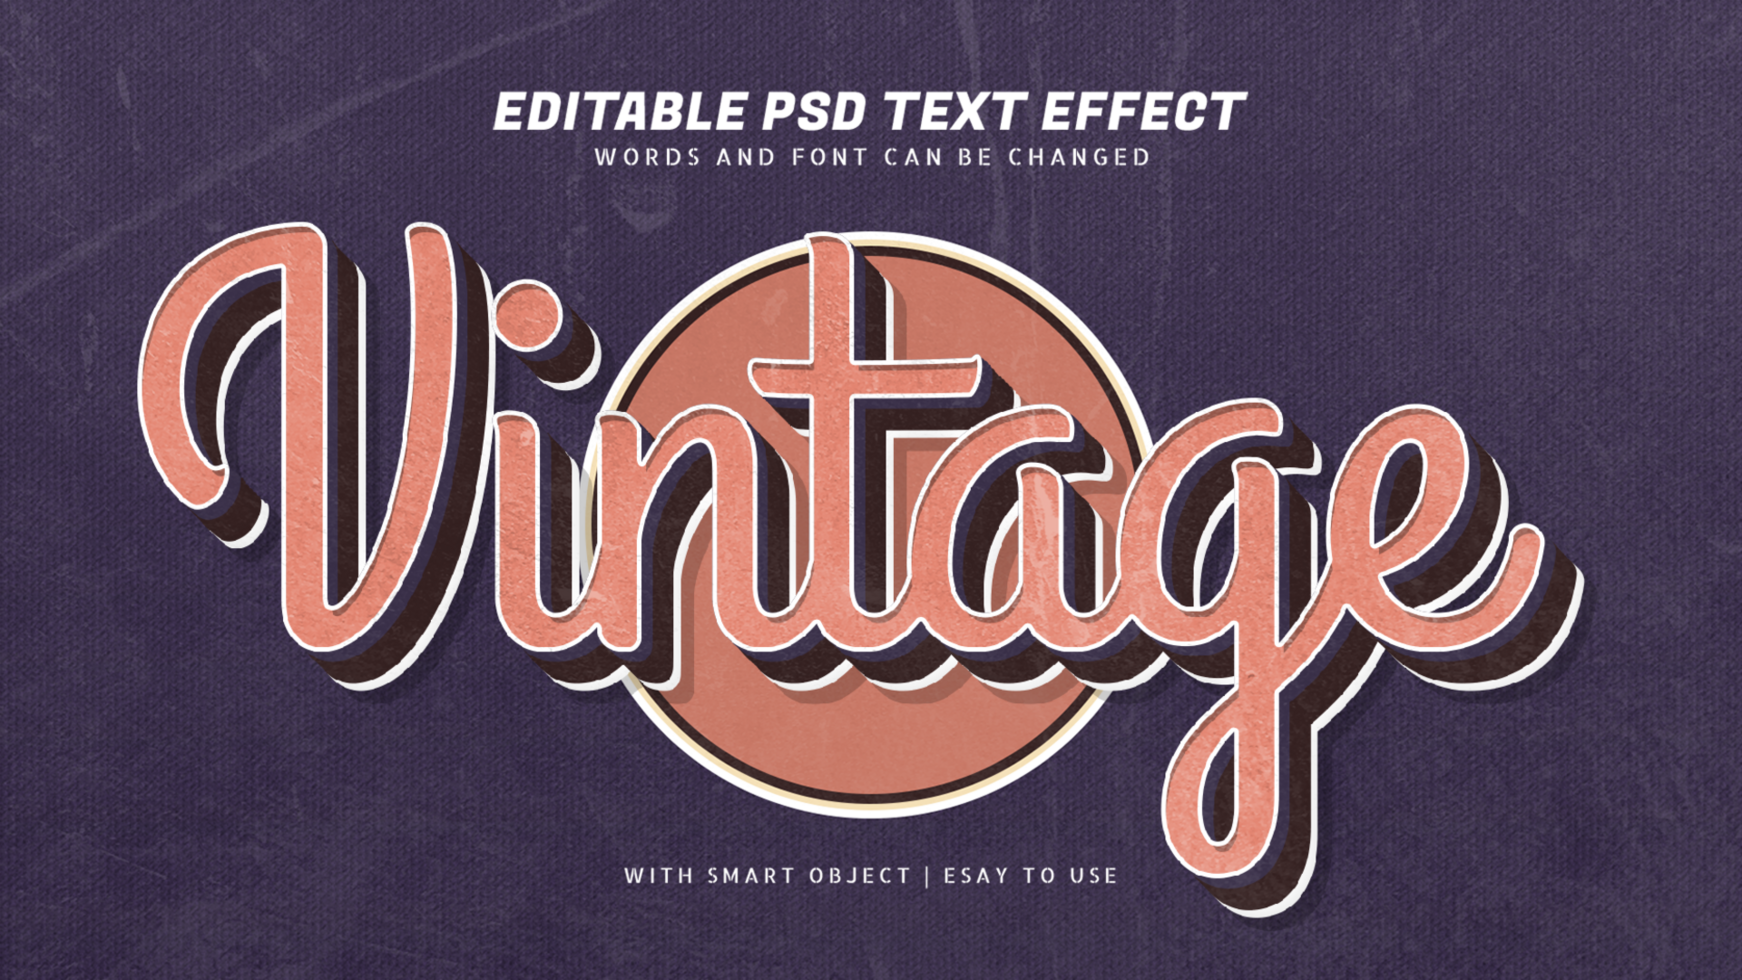 Vintage 3d retro style text effect psd